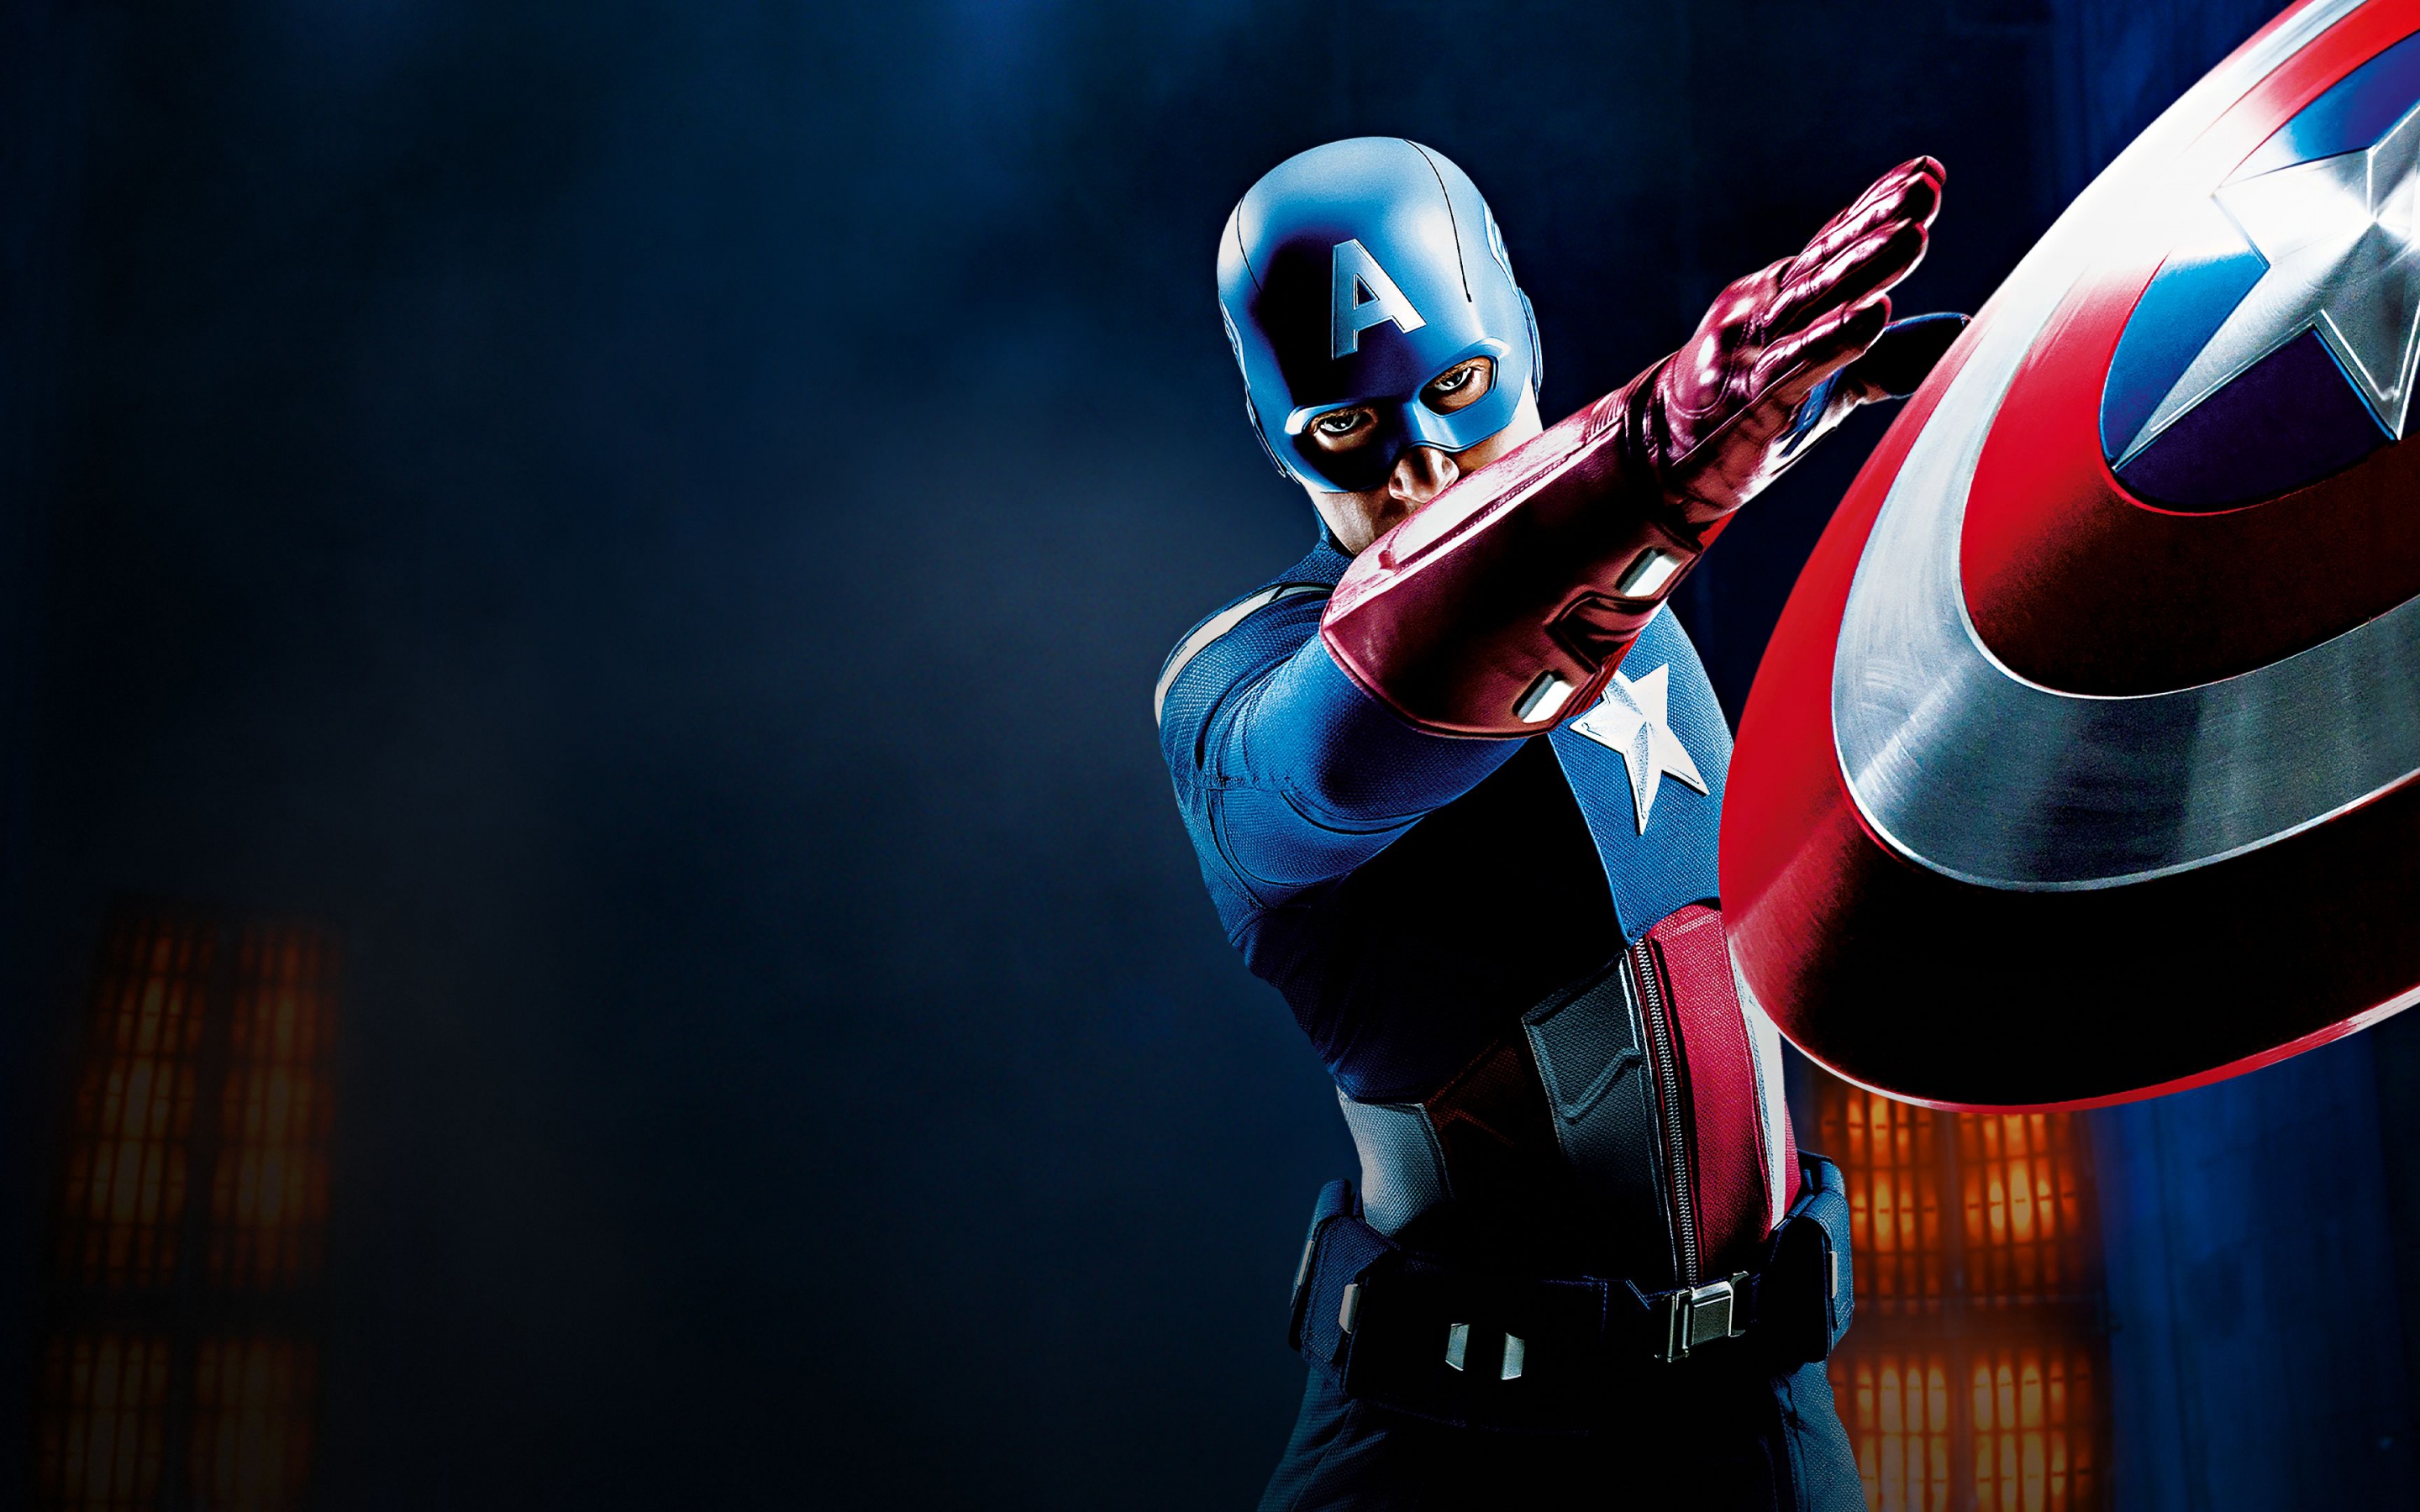 FIGHTING ARMOR Marvel Avengers Captain America Steve Rogers Movable Action  Anime Figure Model Toys Gift 16.5cm For Children - AliExpress